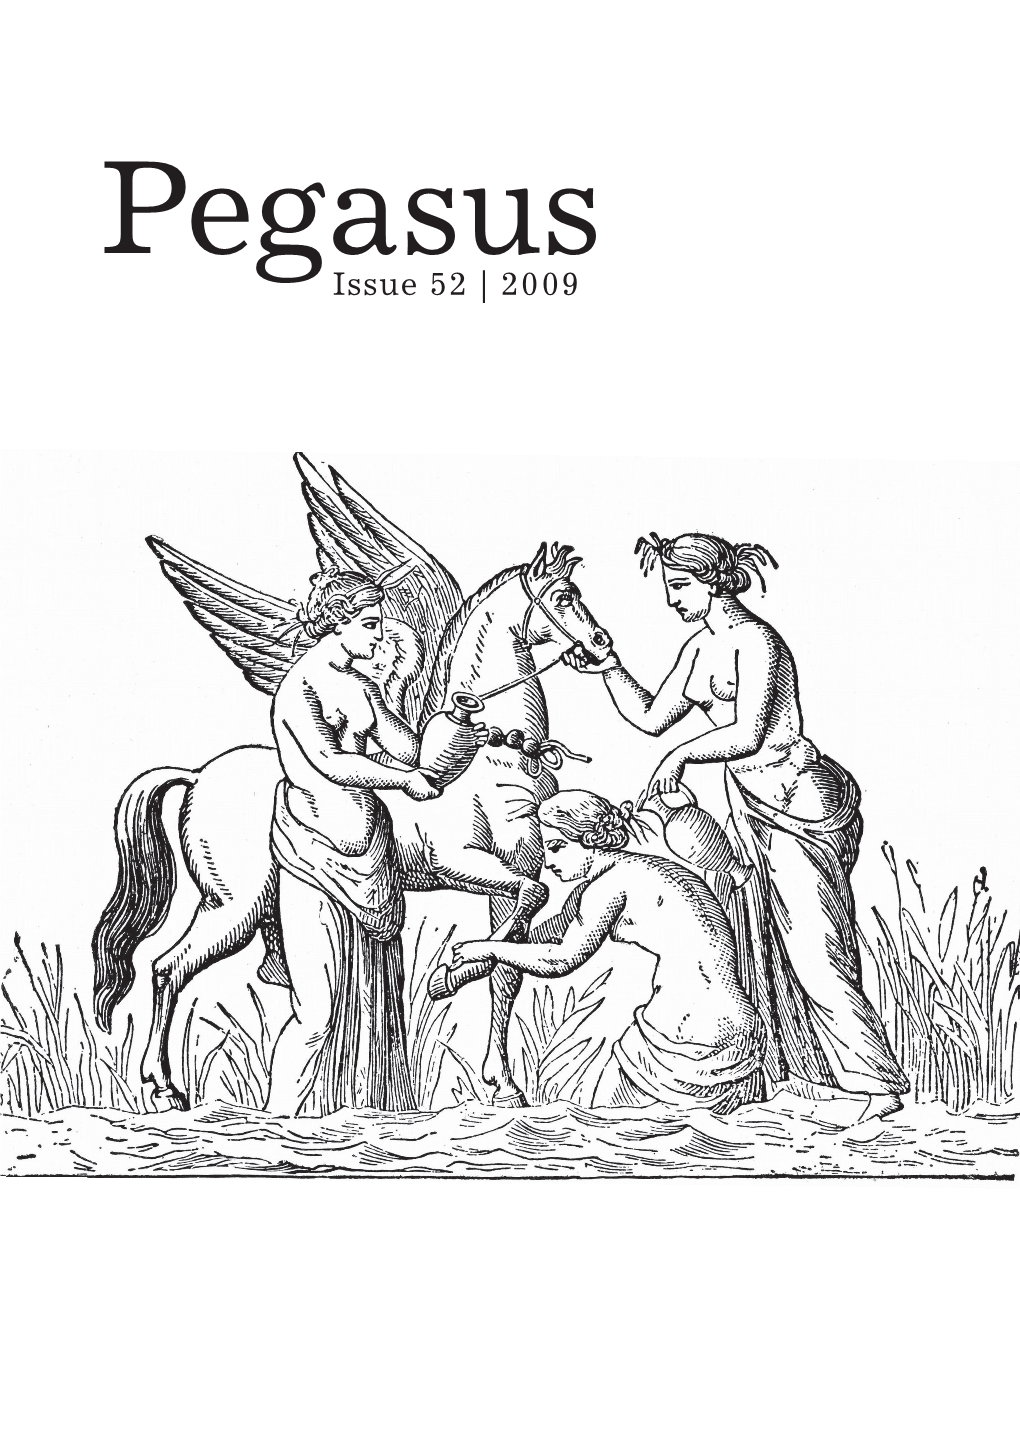 Issue 52 | 2009 PEGASUS